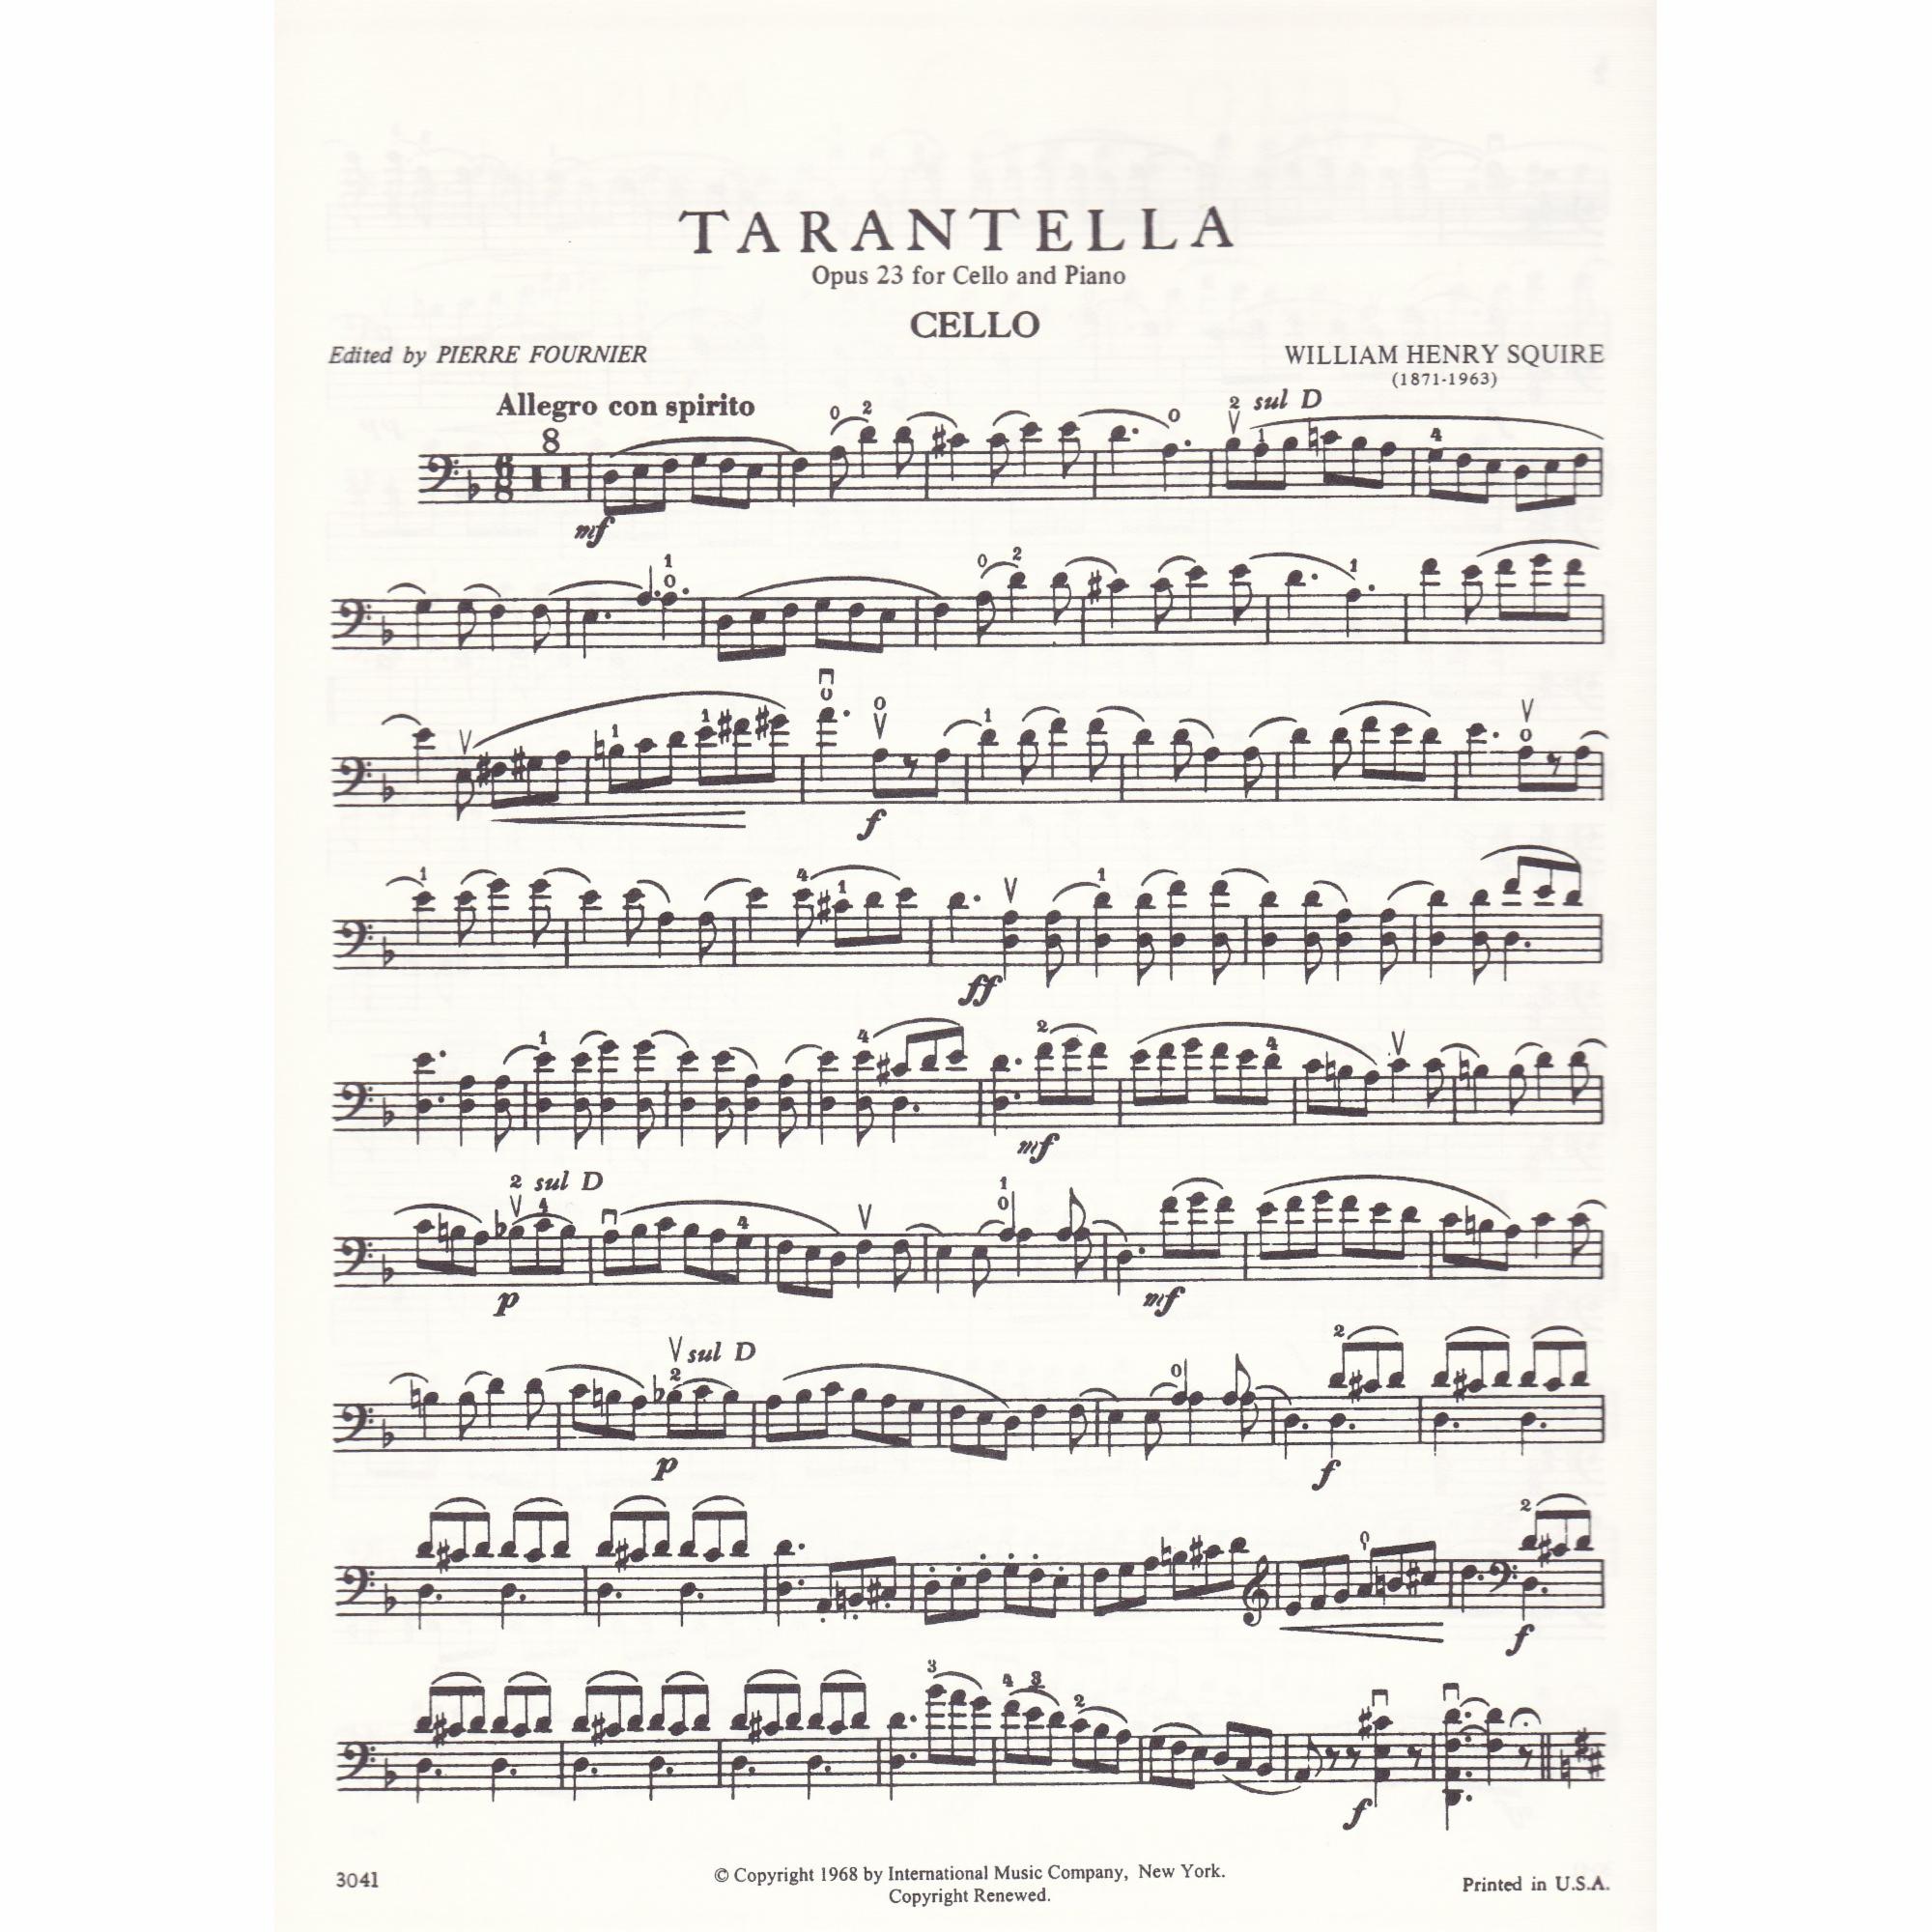 Tarantella for Cello and Piano, Op. 23